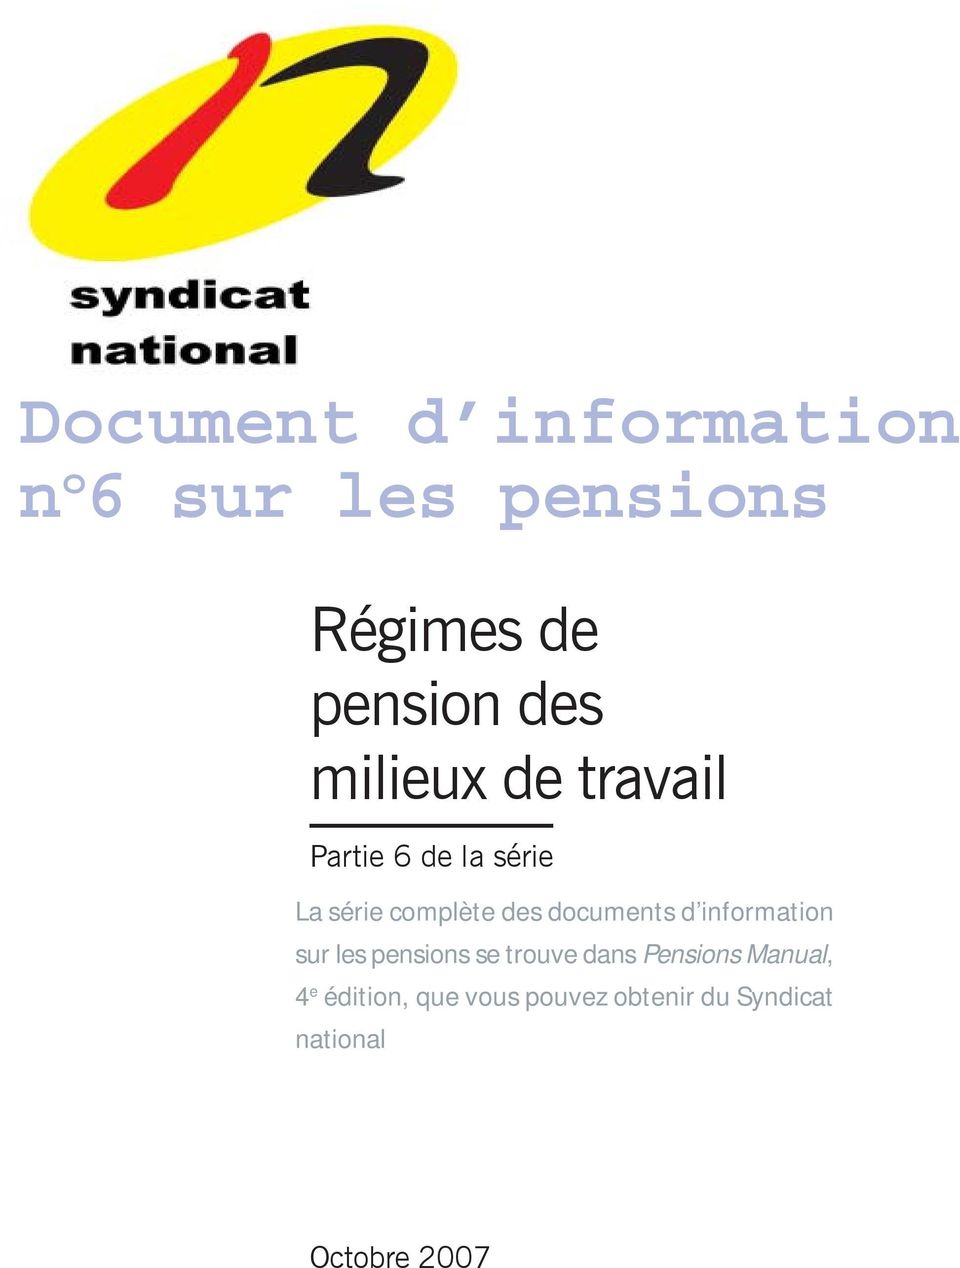 d information sur les pensions se trouve dans Pensions Manual, 4